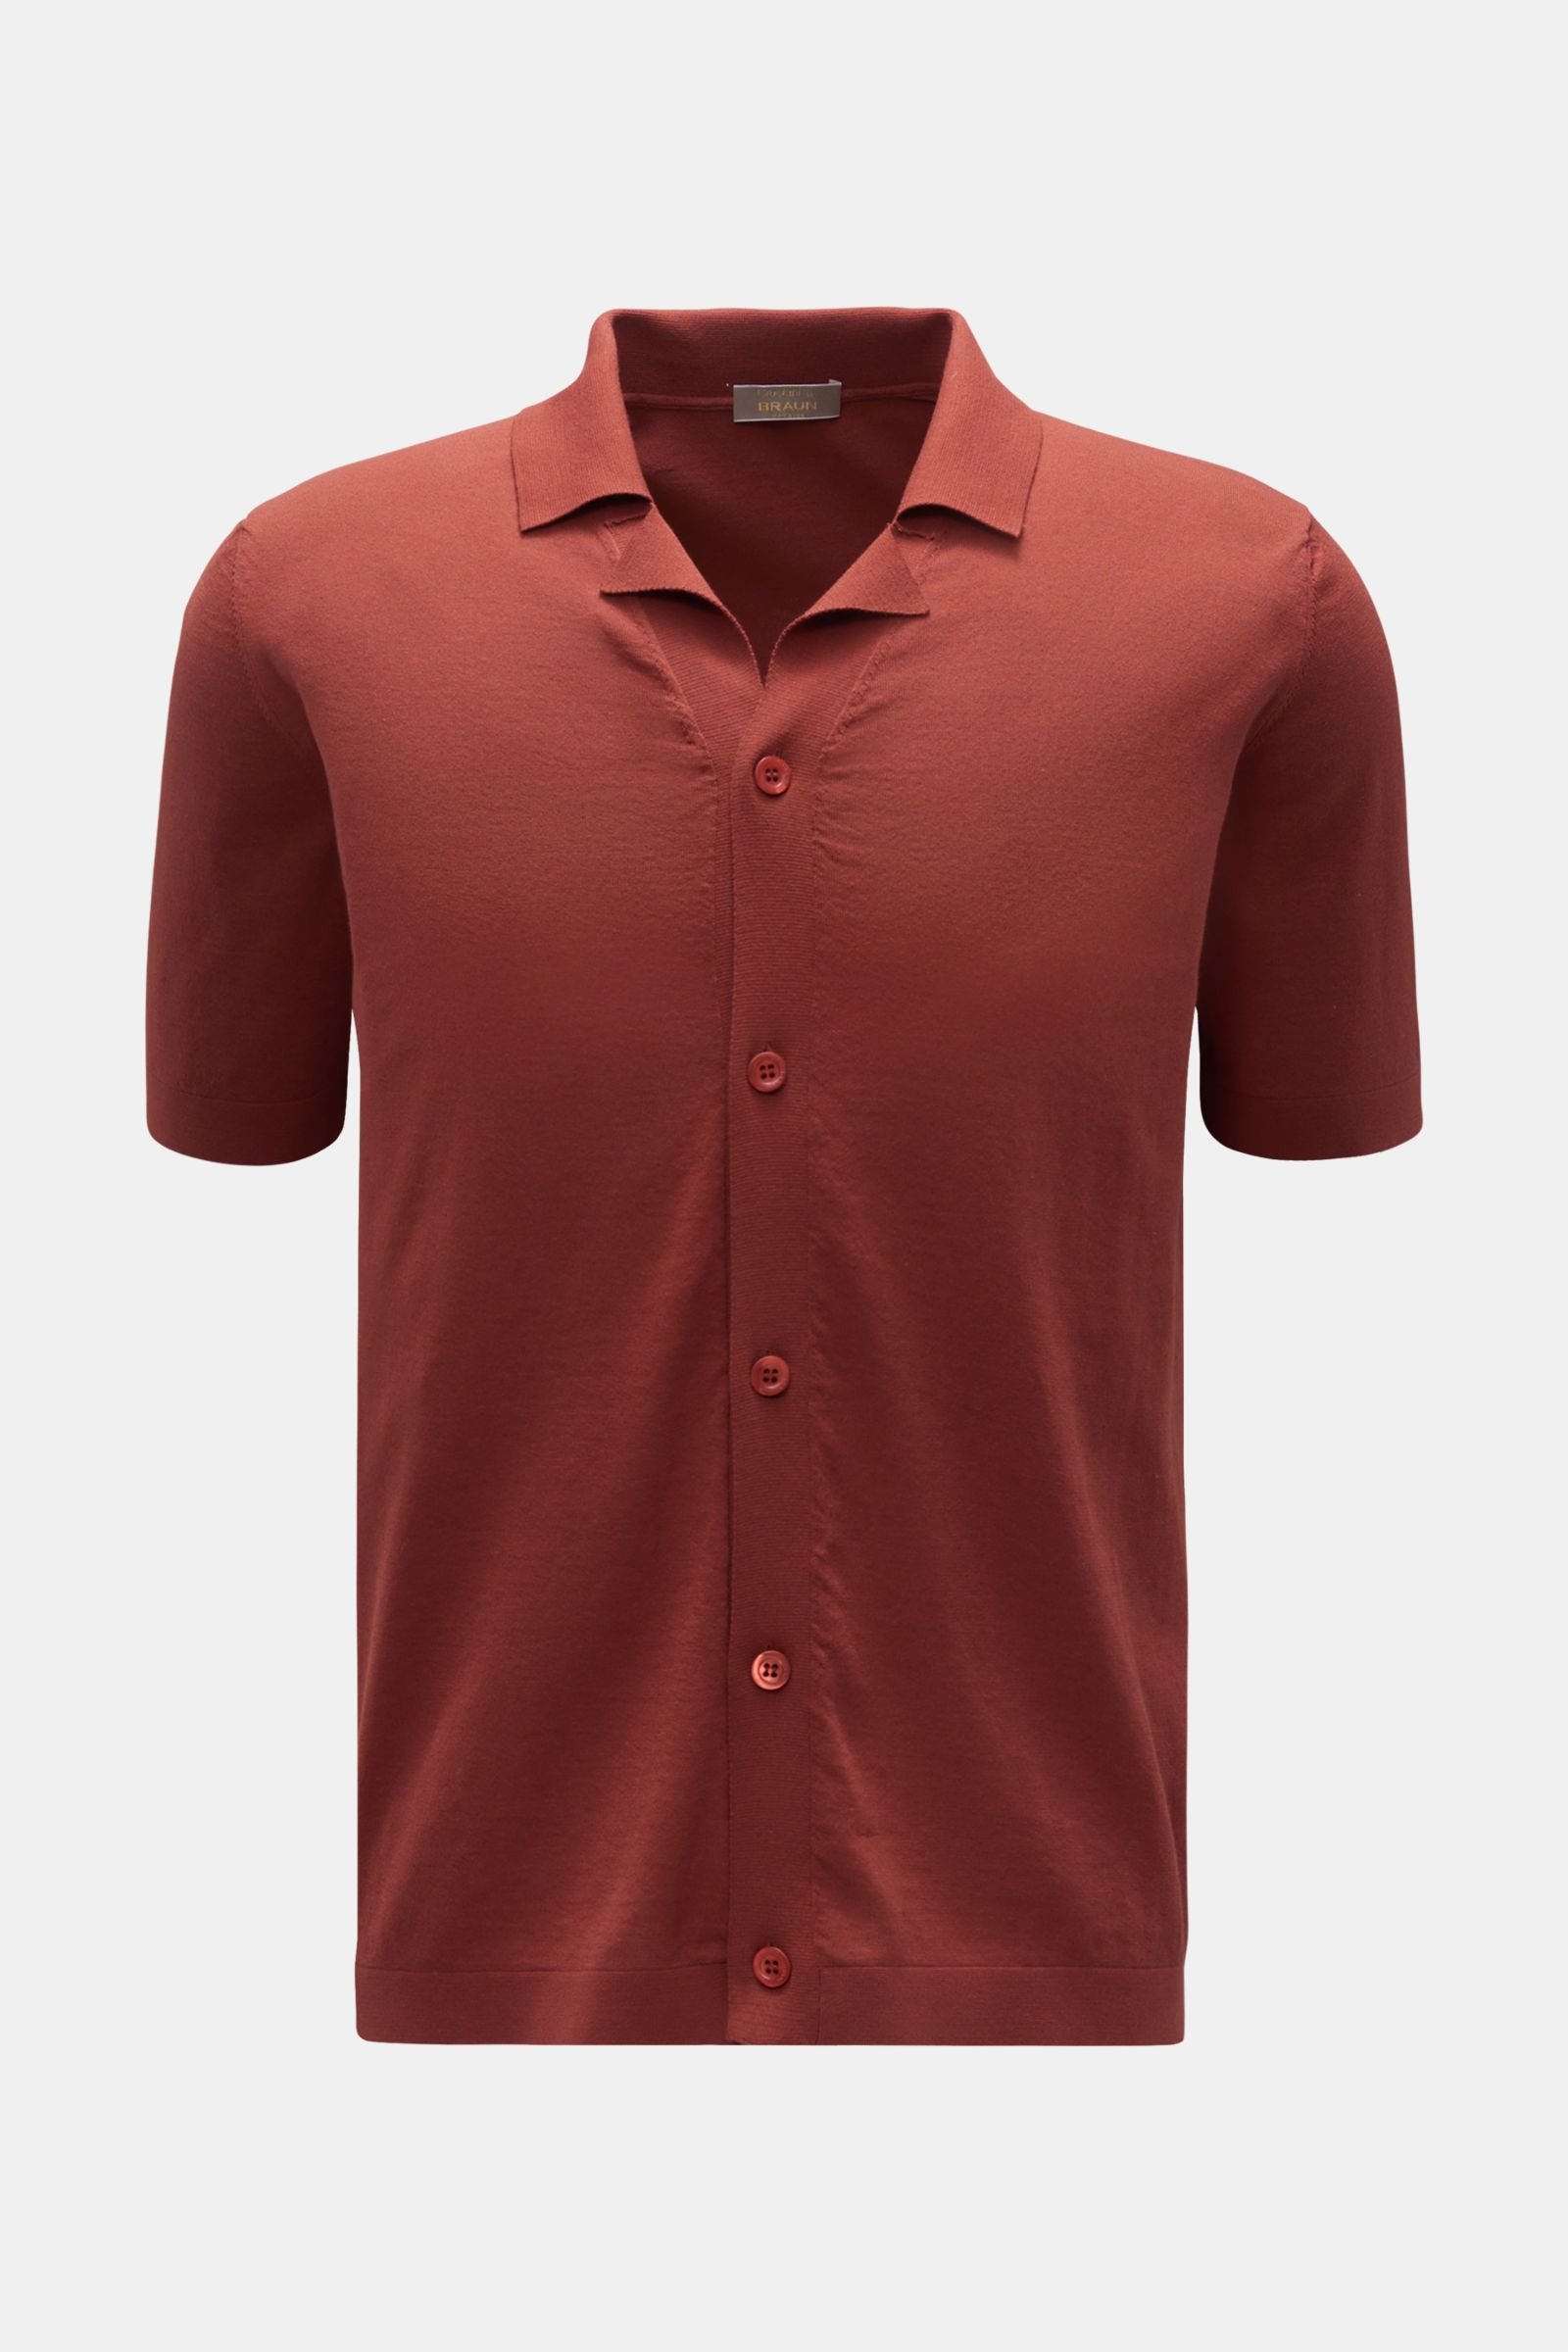 Short sleeve knit shirt Cuban collar red brown